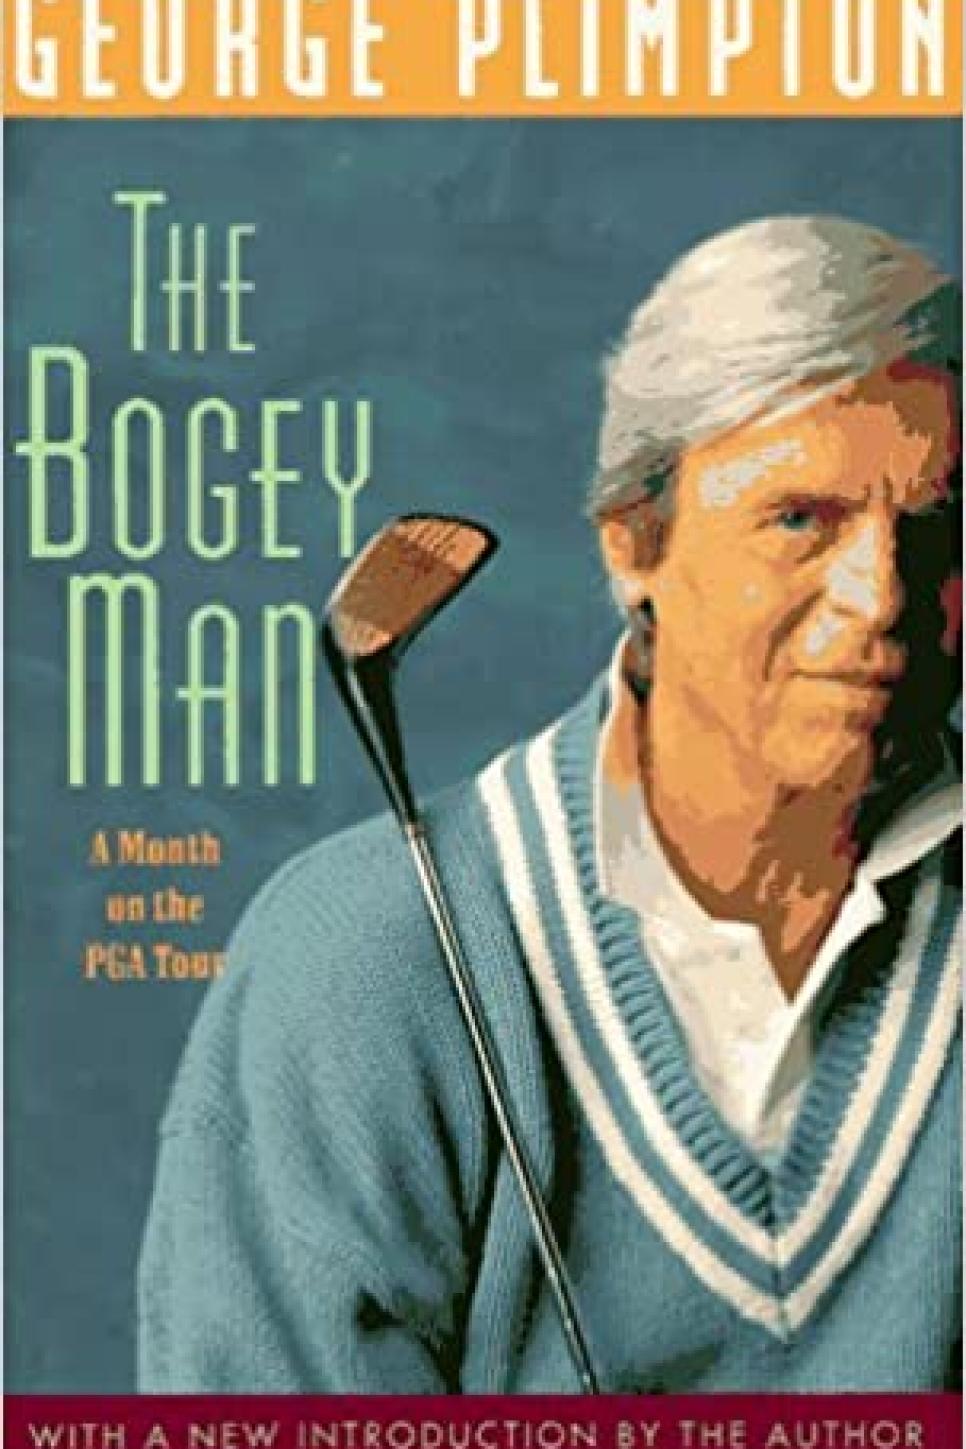 The Bogey Man By George Plimpton (1967)